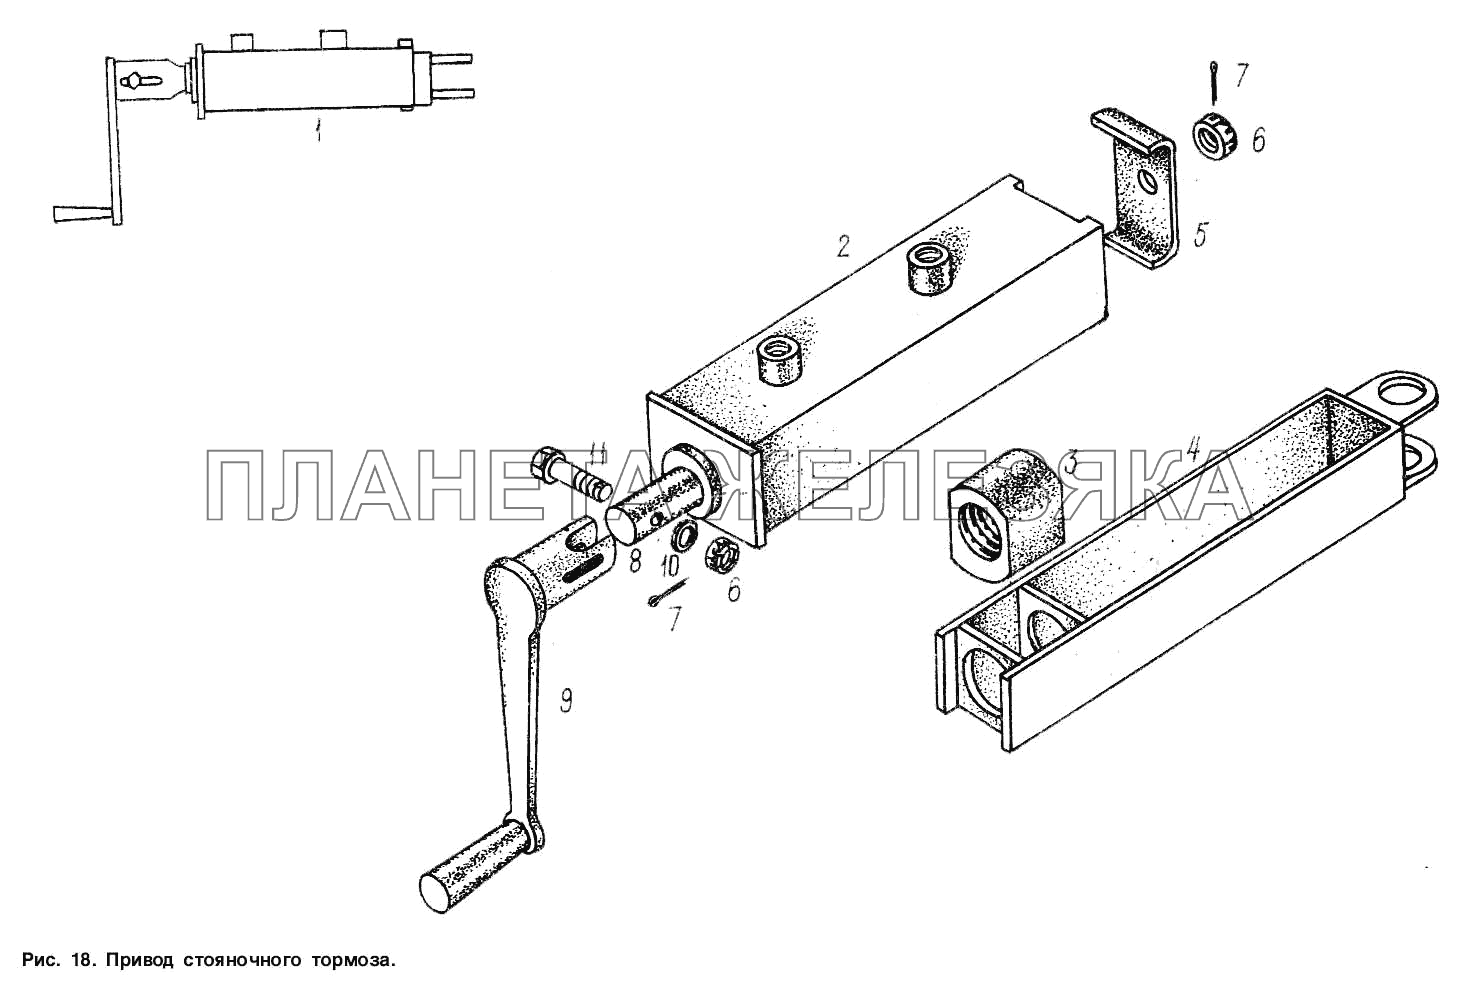 Привод стояночного тормоза МАЗ-9506